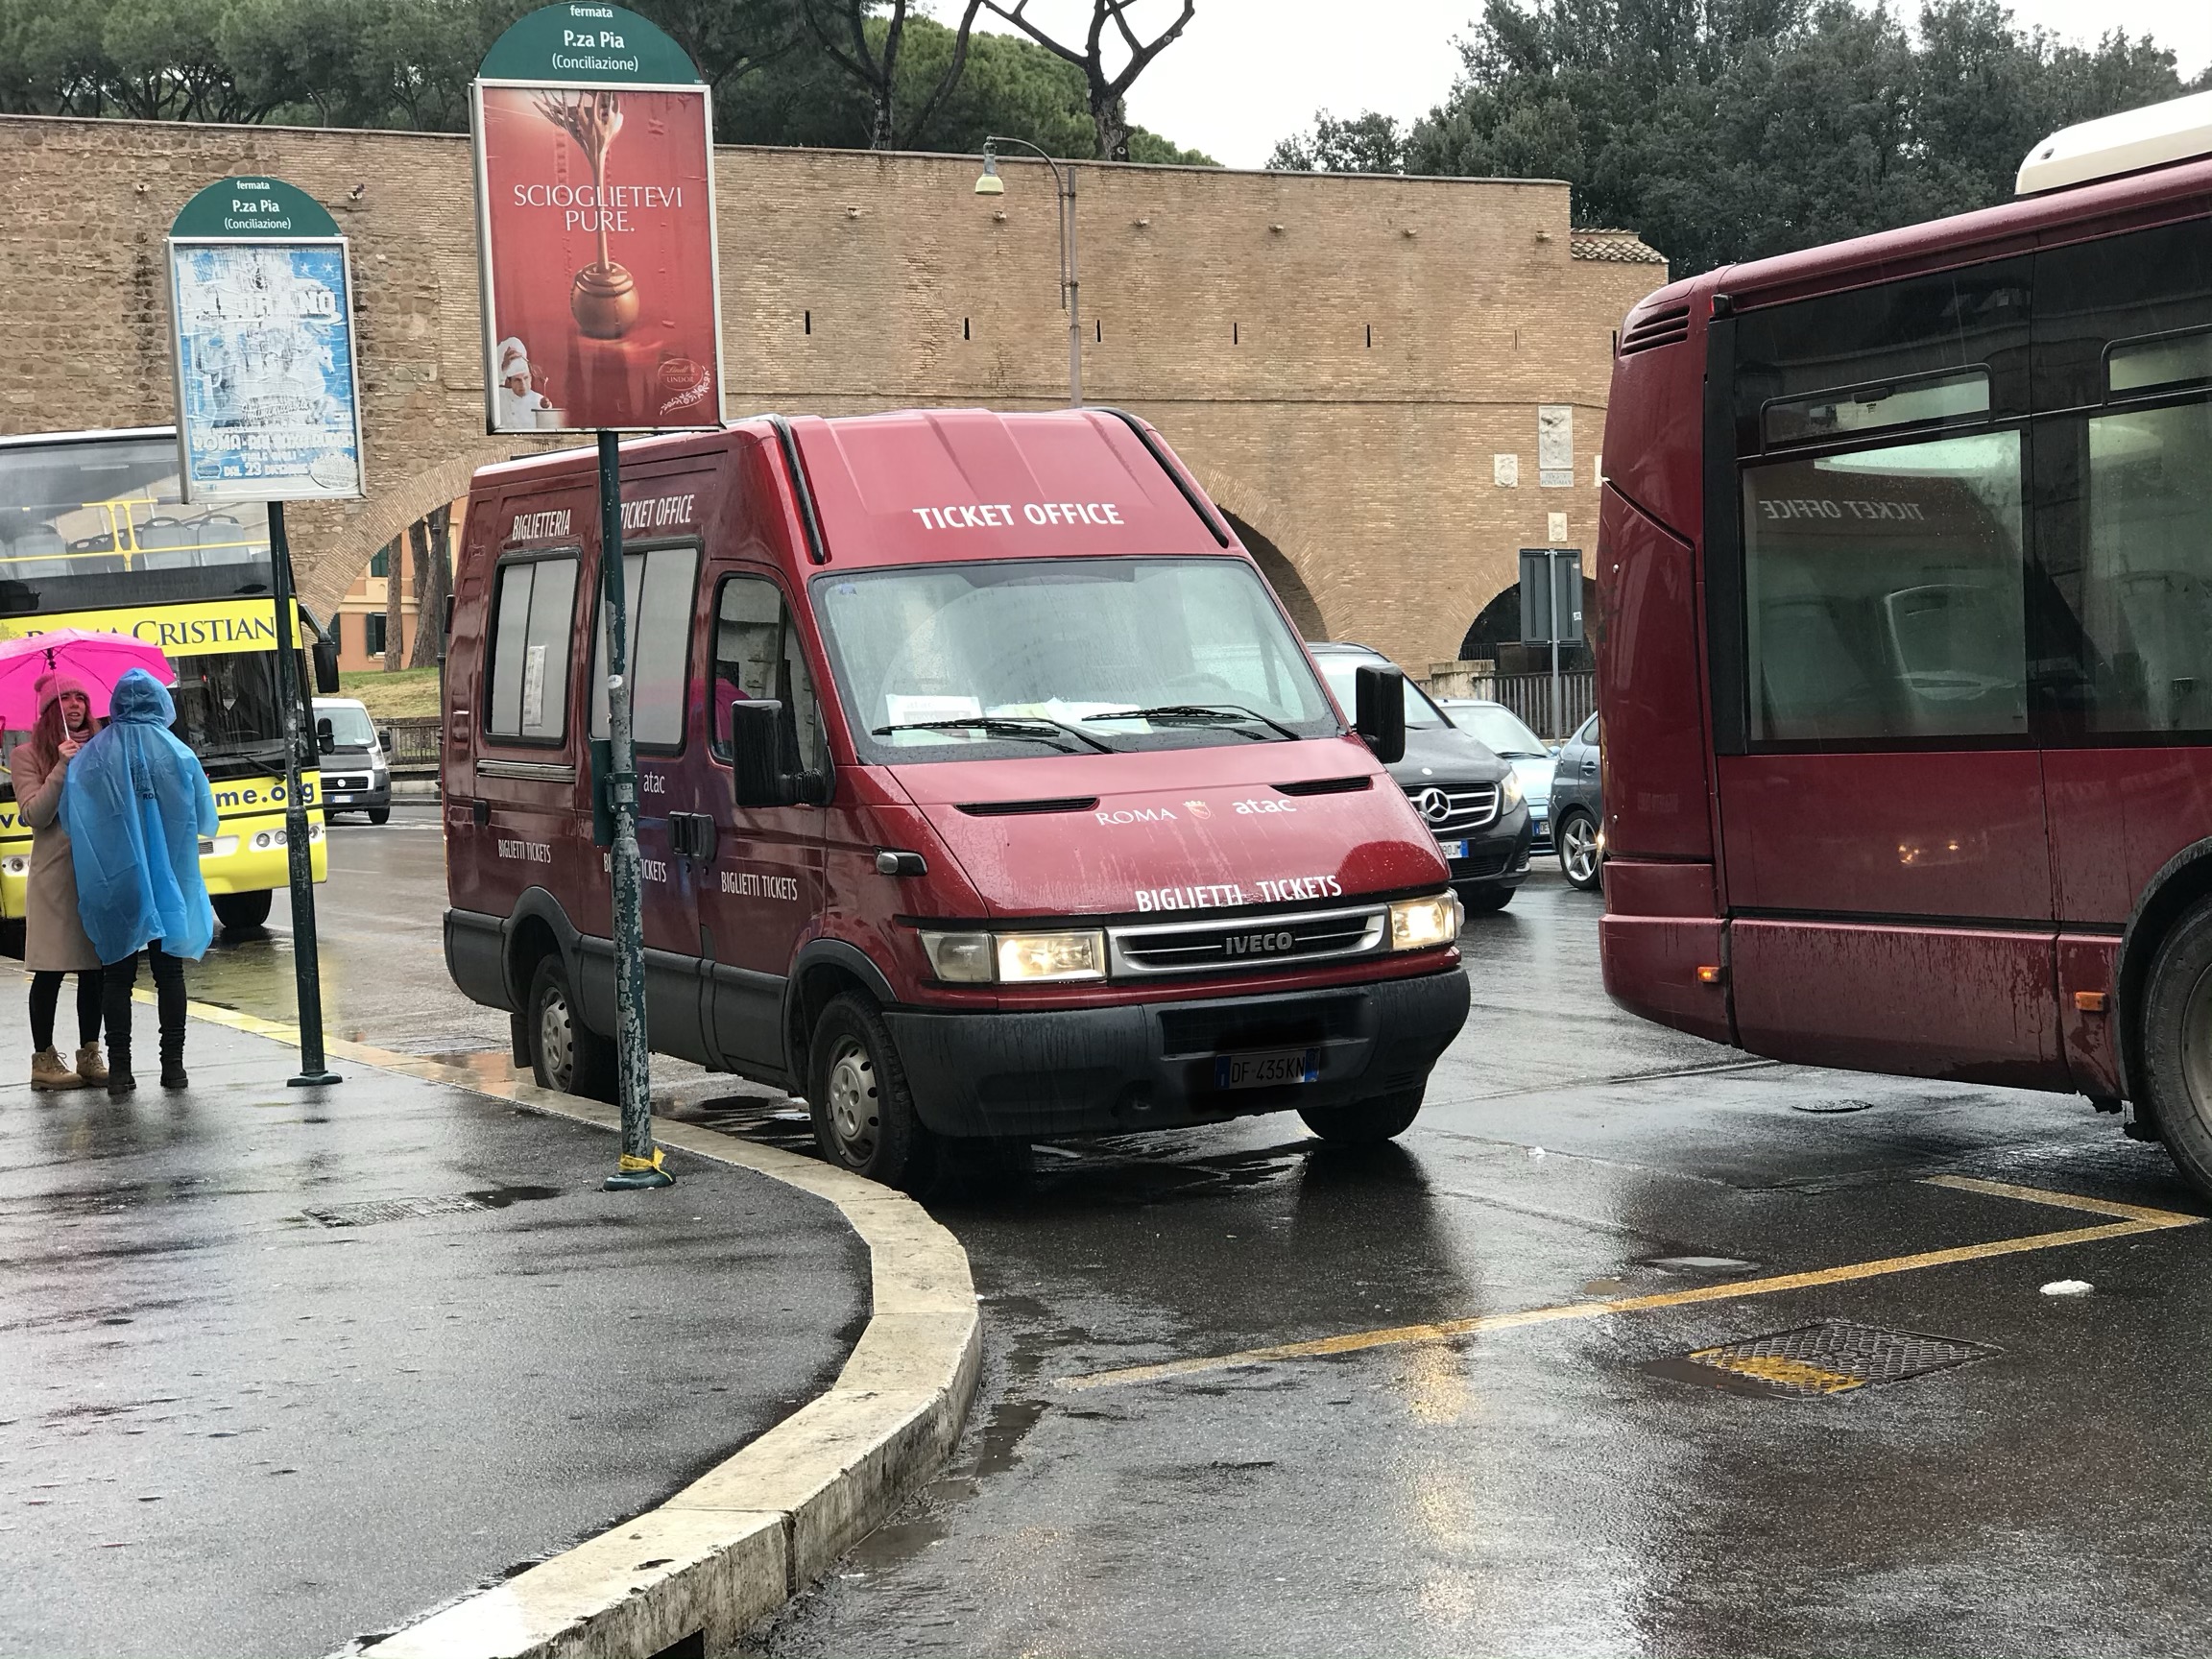 La biglietteria vicino al Vaticano